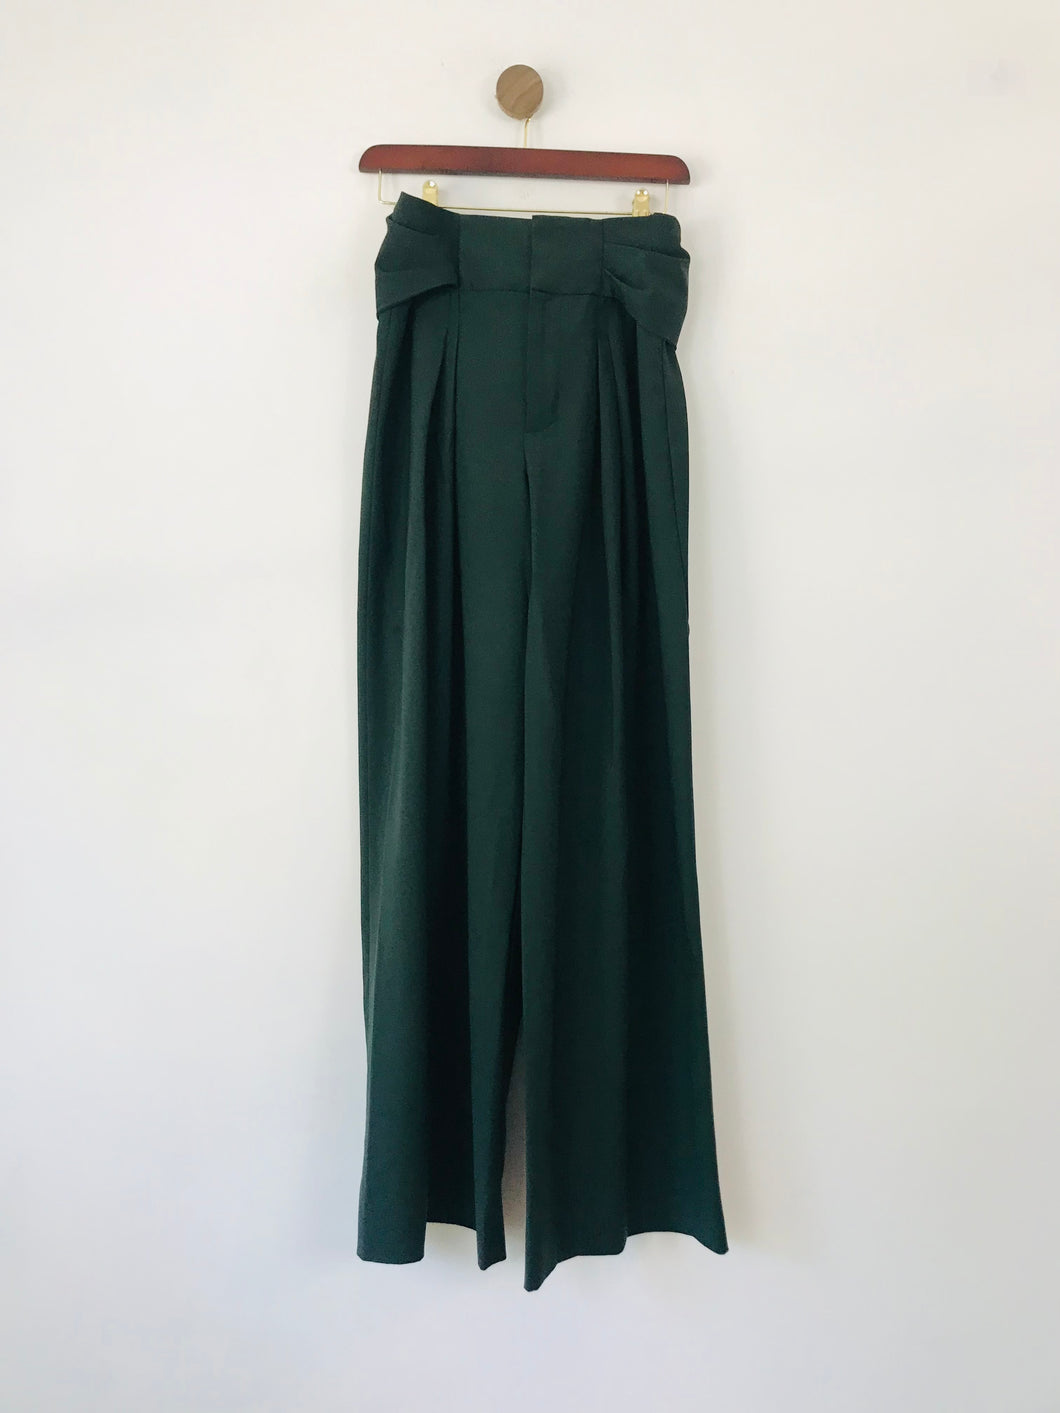 Zara Women's Wide Leg Trousers | M UK10-12 | Green